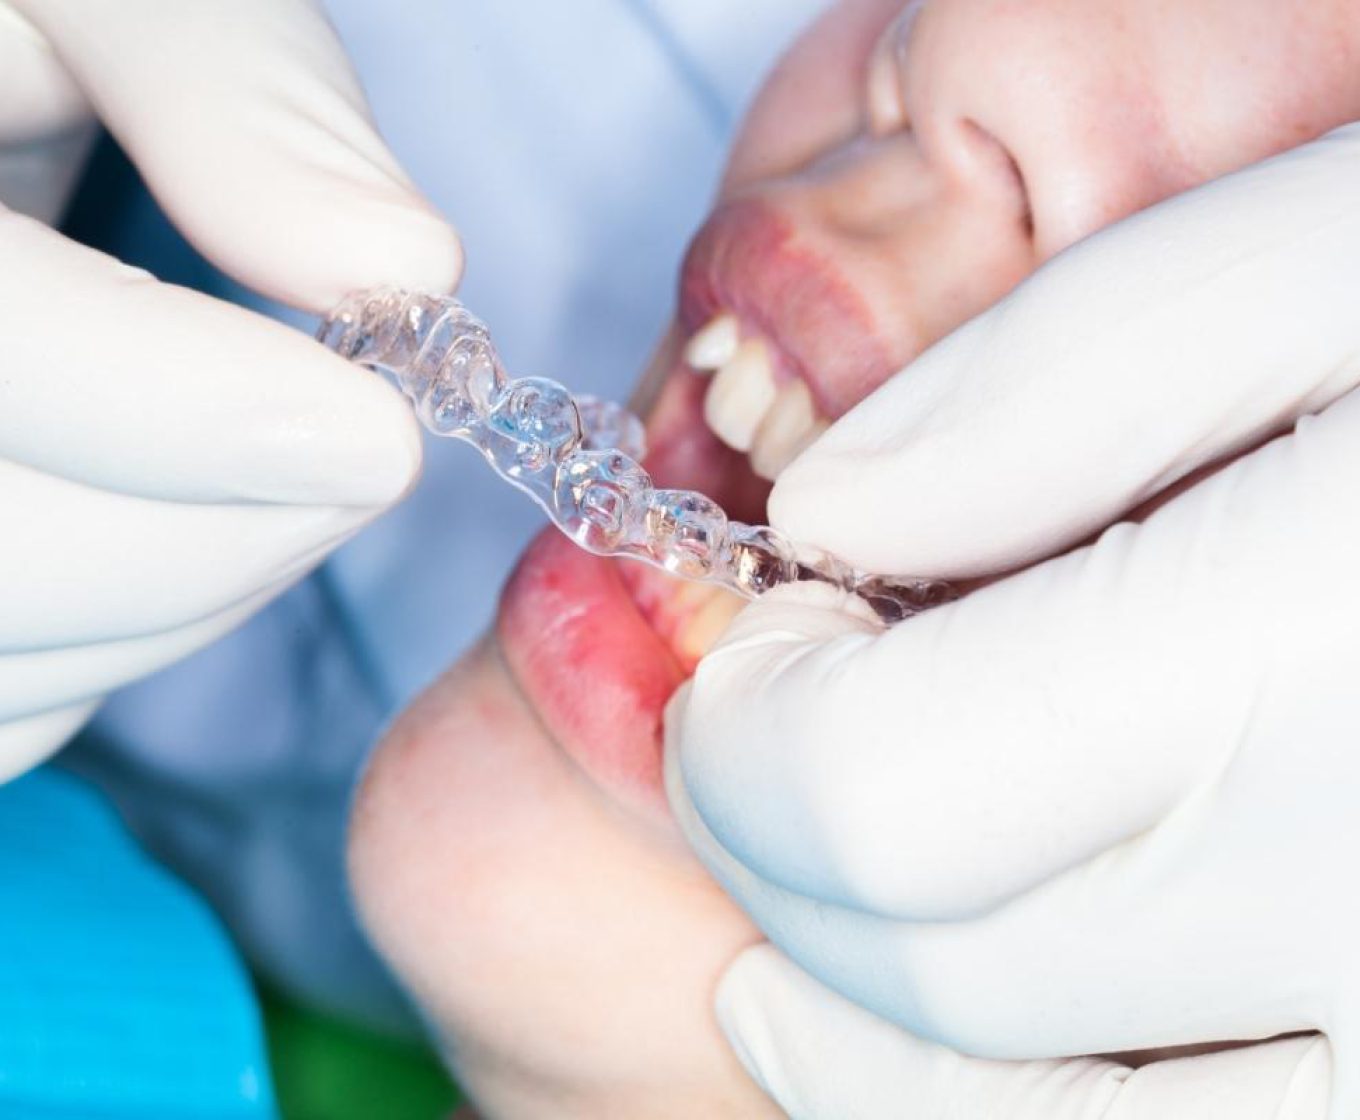 עקירת שיניים כירורגית